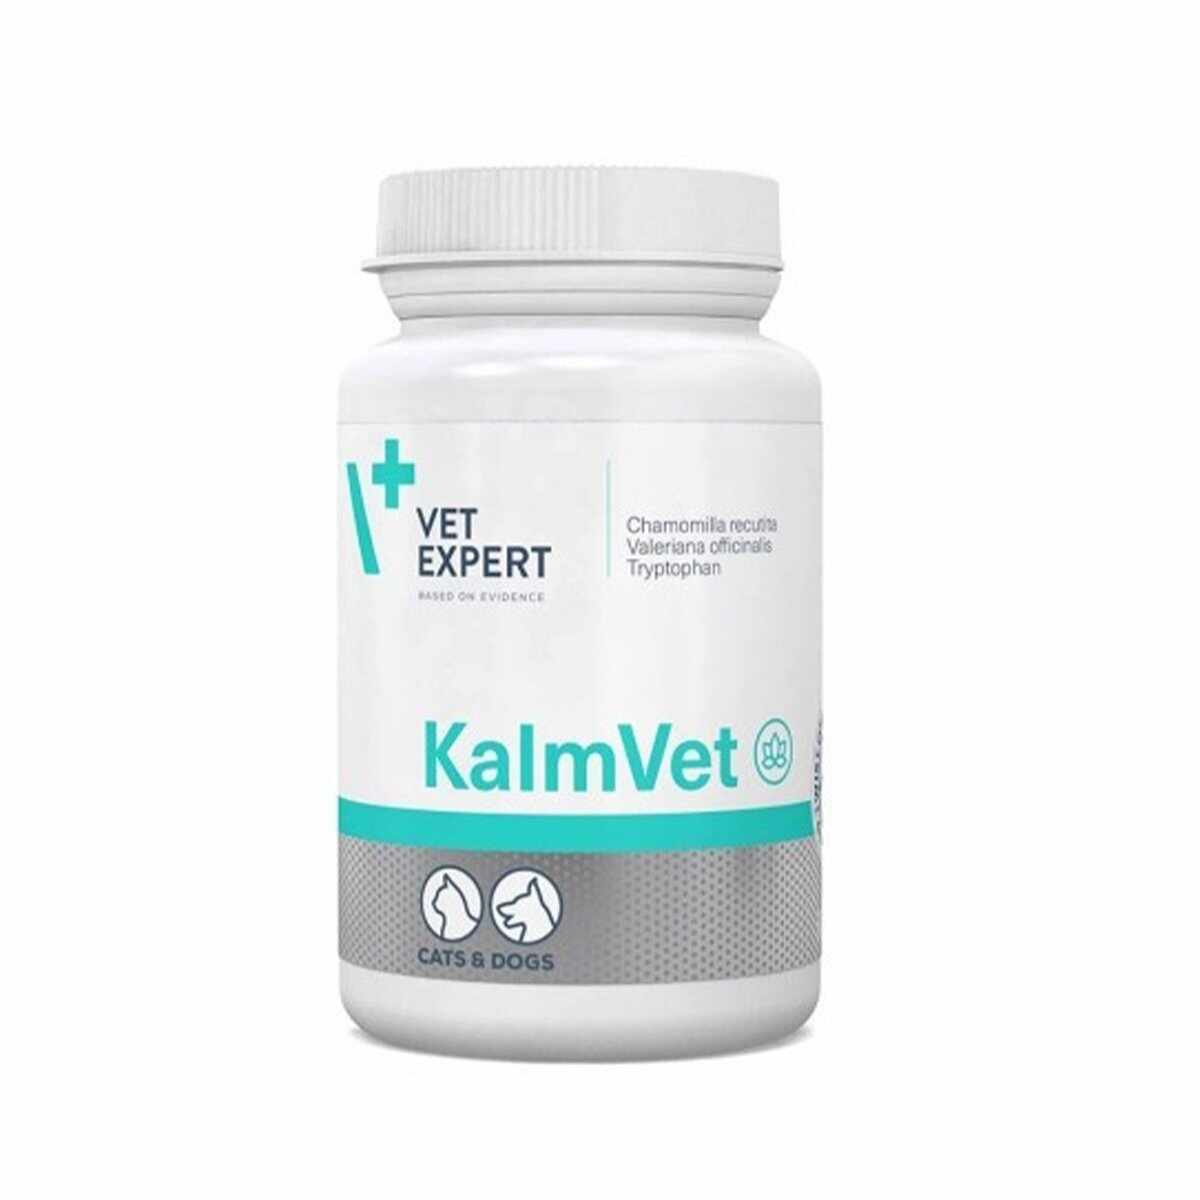 KalmVet 300 mg, 60 Capsule Twist Off